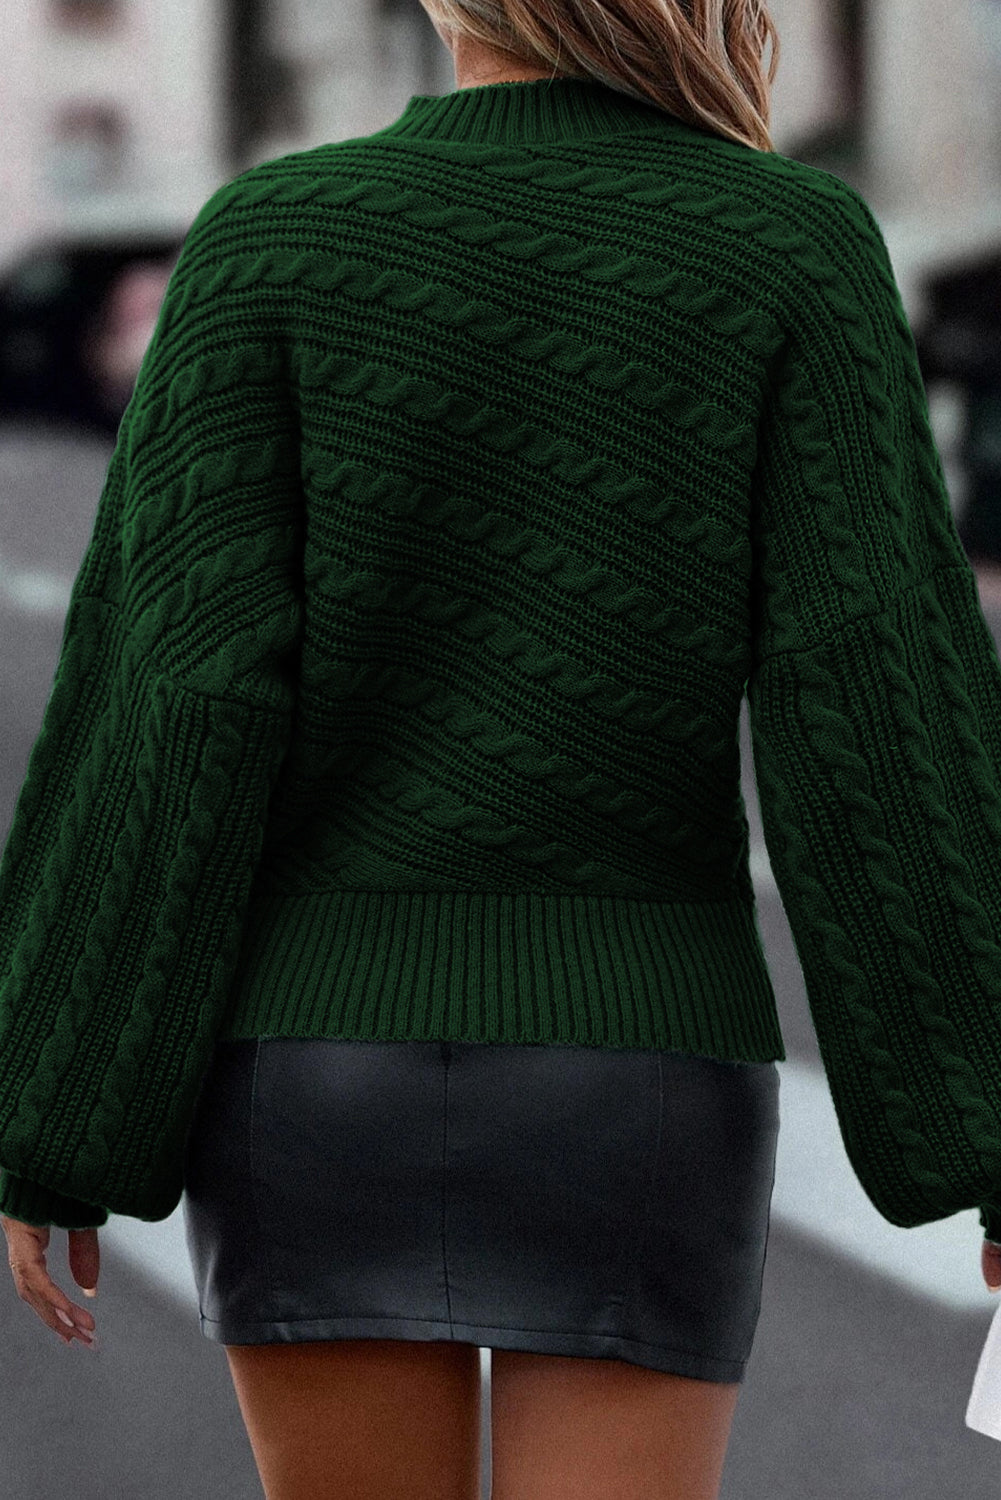 Pull en tricot torsadé à manches lanternes et col montant vert noirâtre